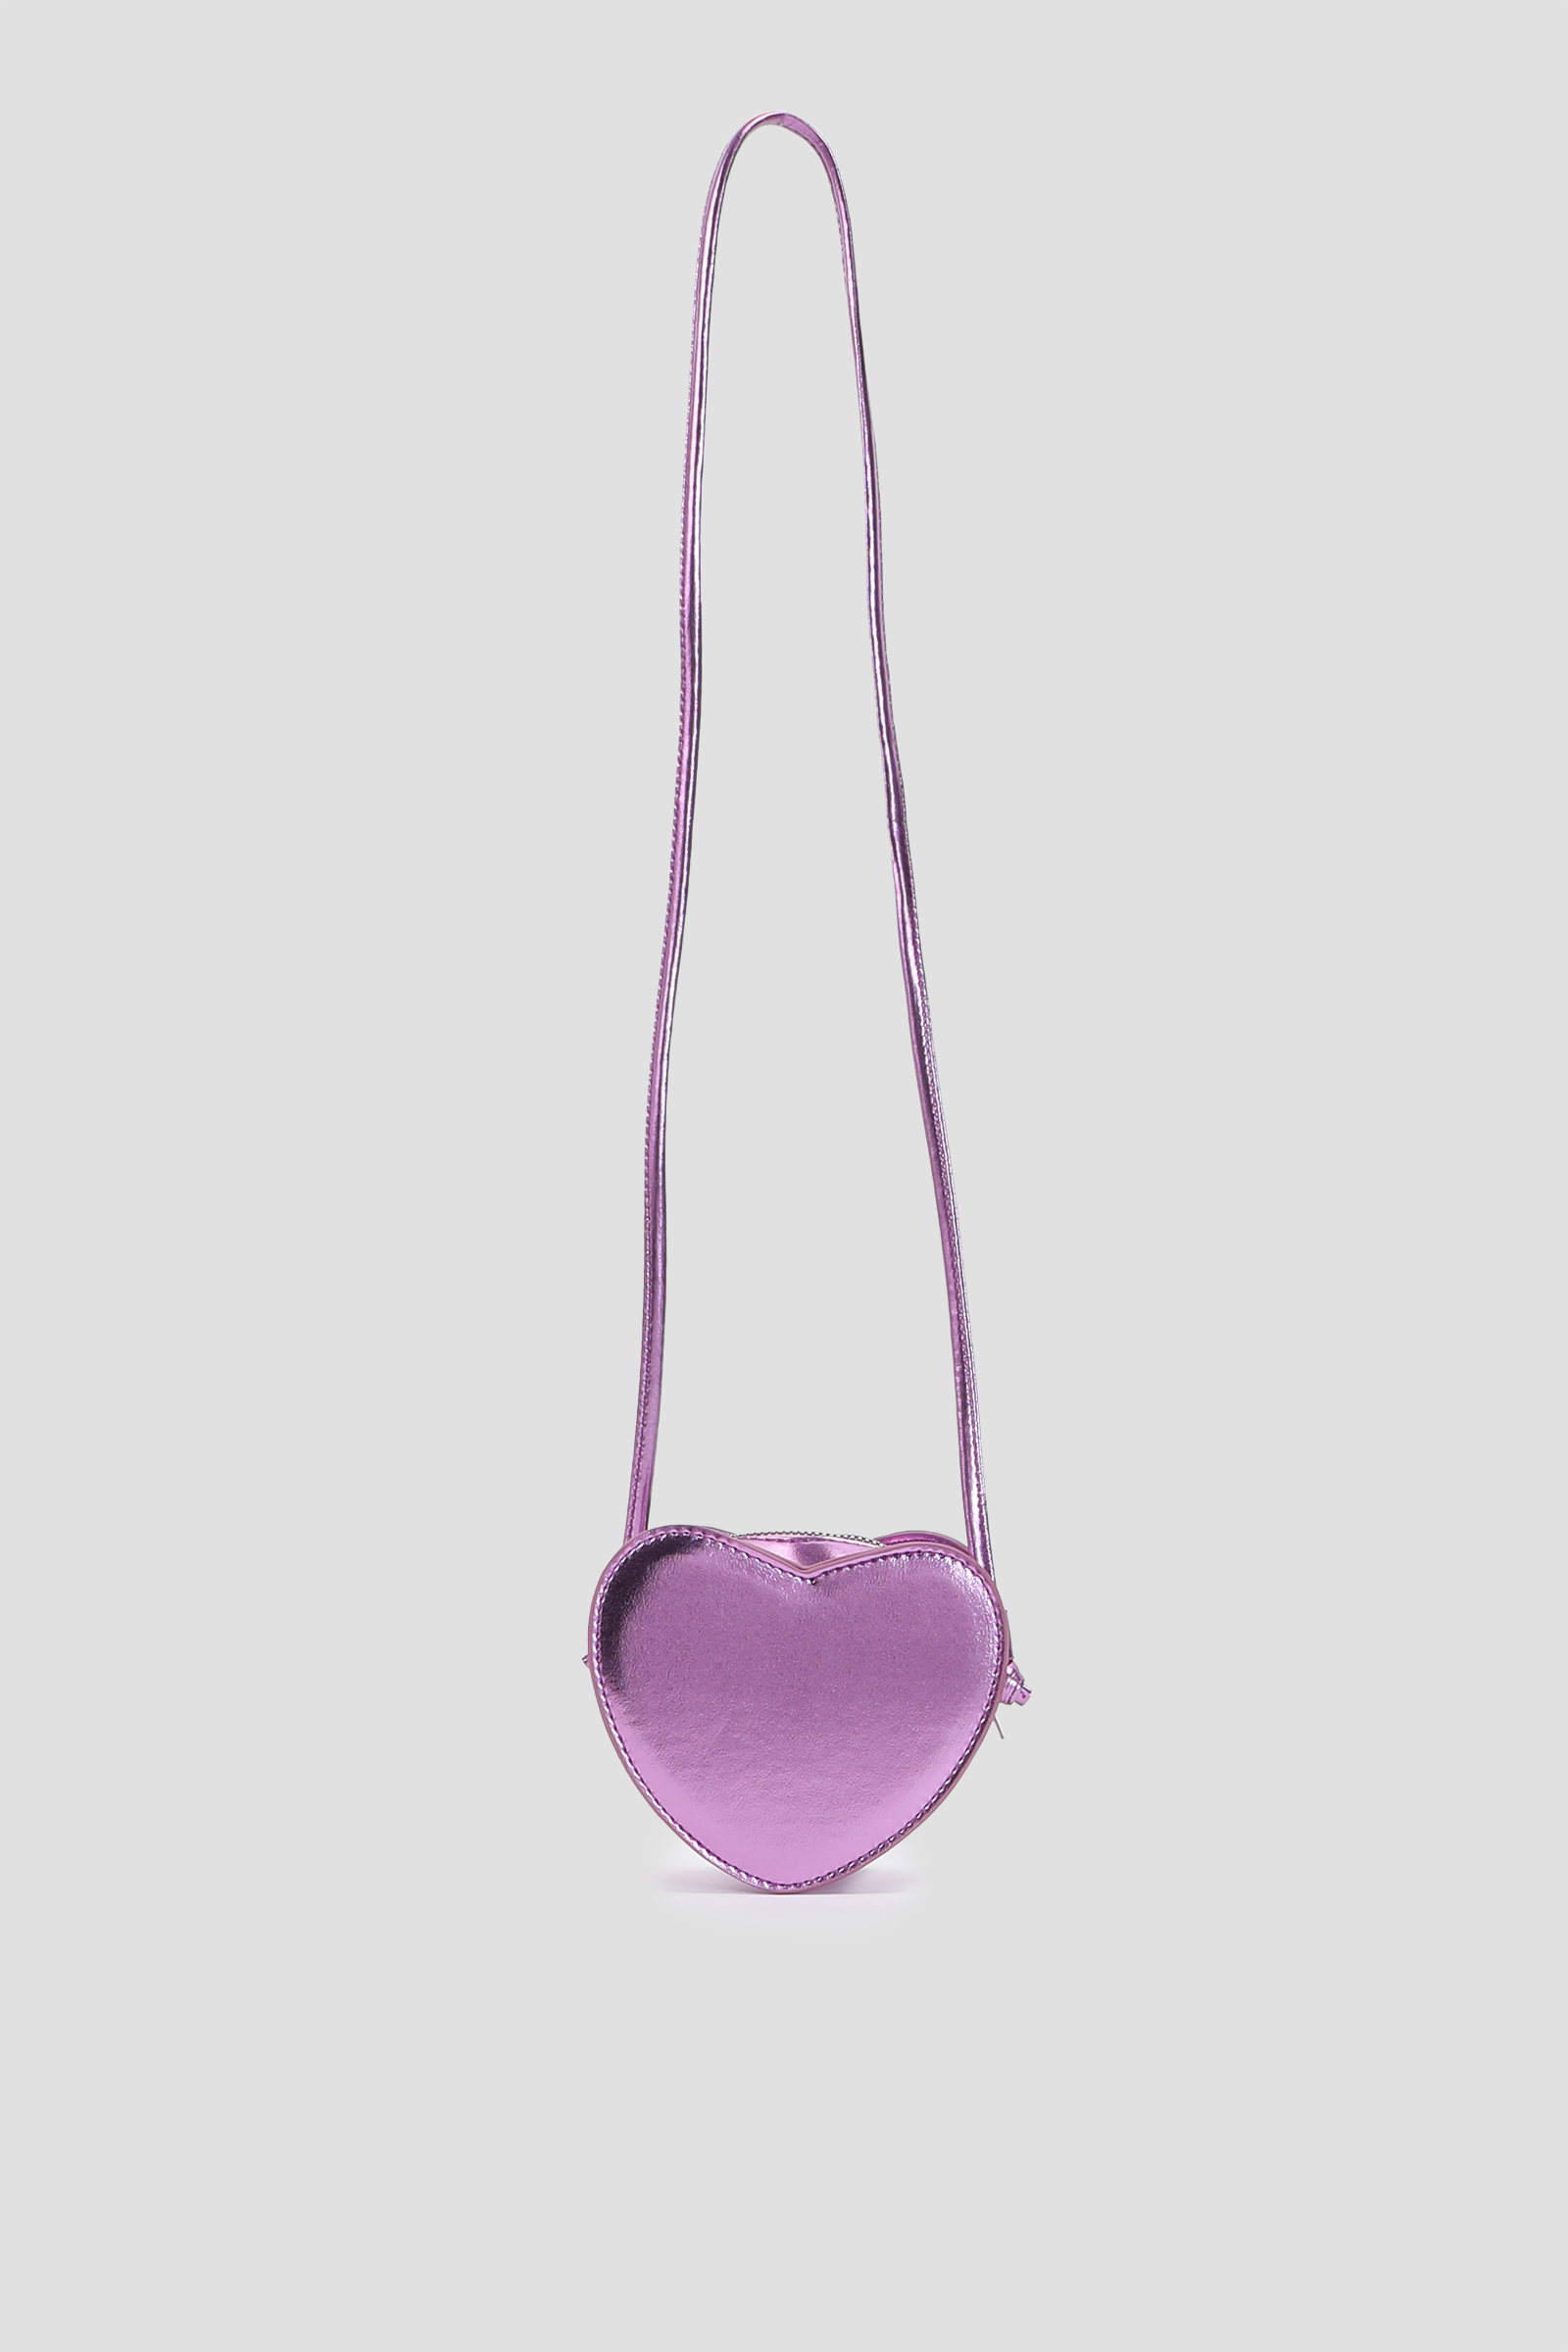 Ardene Heart Shaped Purse in Medium Purple | Faux Leather